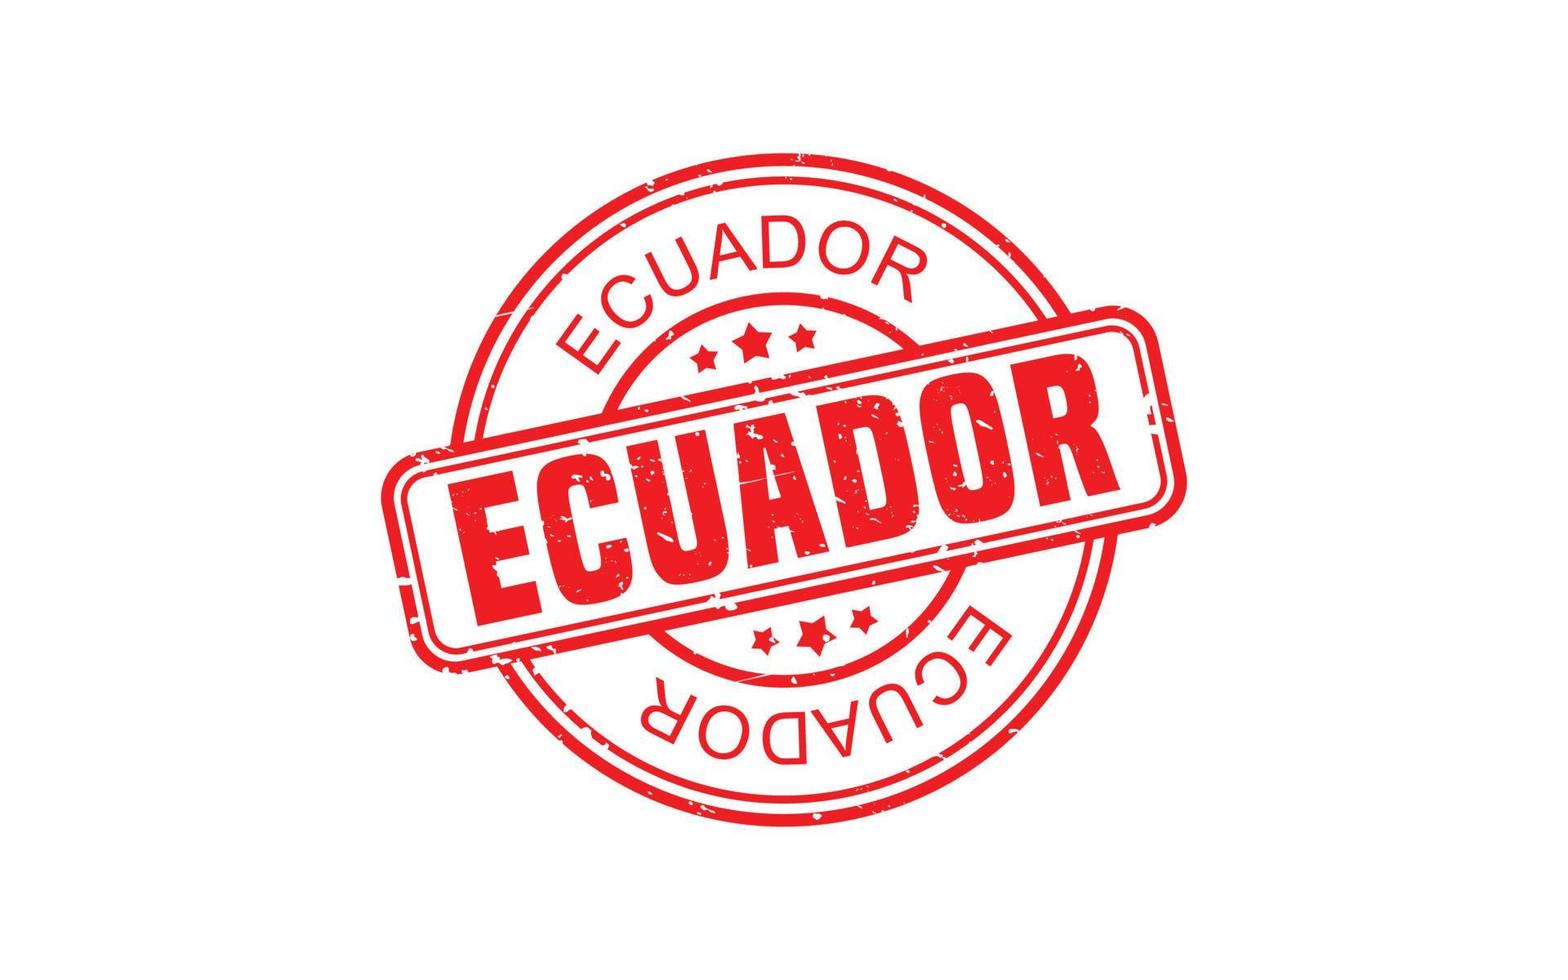 Ecuador-Stempelgummi mit Grunge-Stil auf weißem Hintergrund vektor